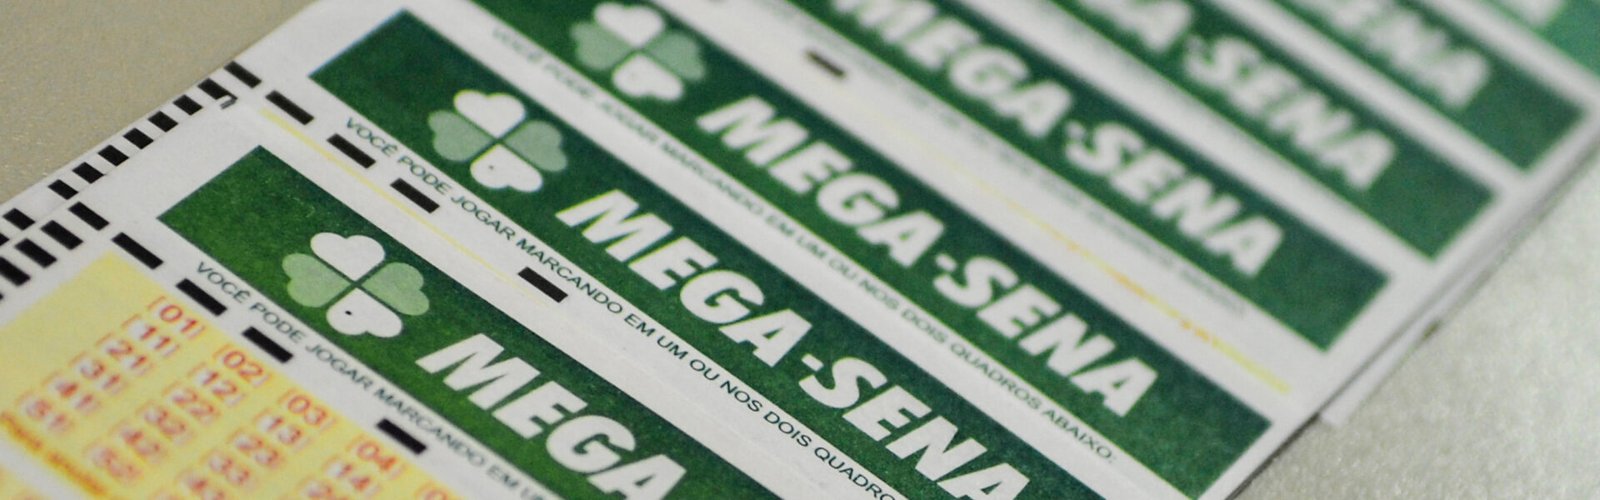 Mega Sena sorteia nesta quinta feira prêmio estimado em R$ 9 milhões